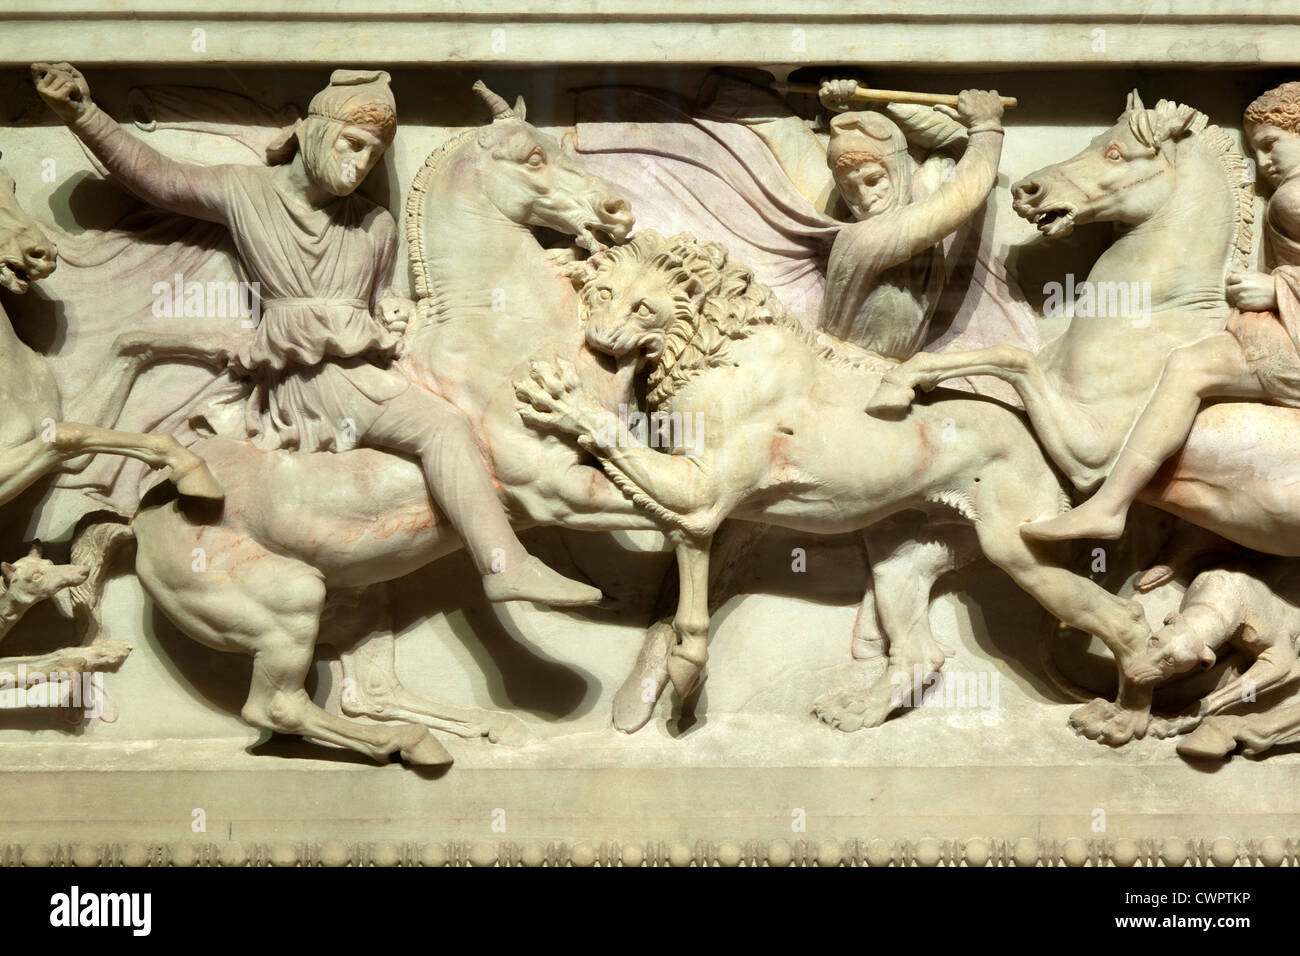 Türkei, Istanbul, Sultanahmet,  Alexandersarkophag im Archäologischen Museum.  Darstellung Kampf gegen die Perser. Stock Photo